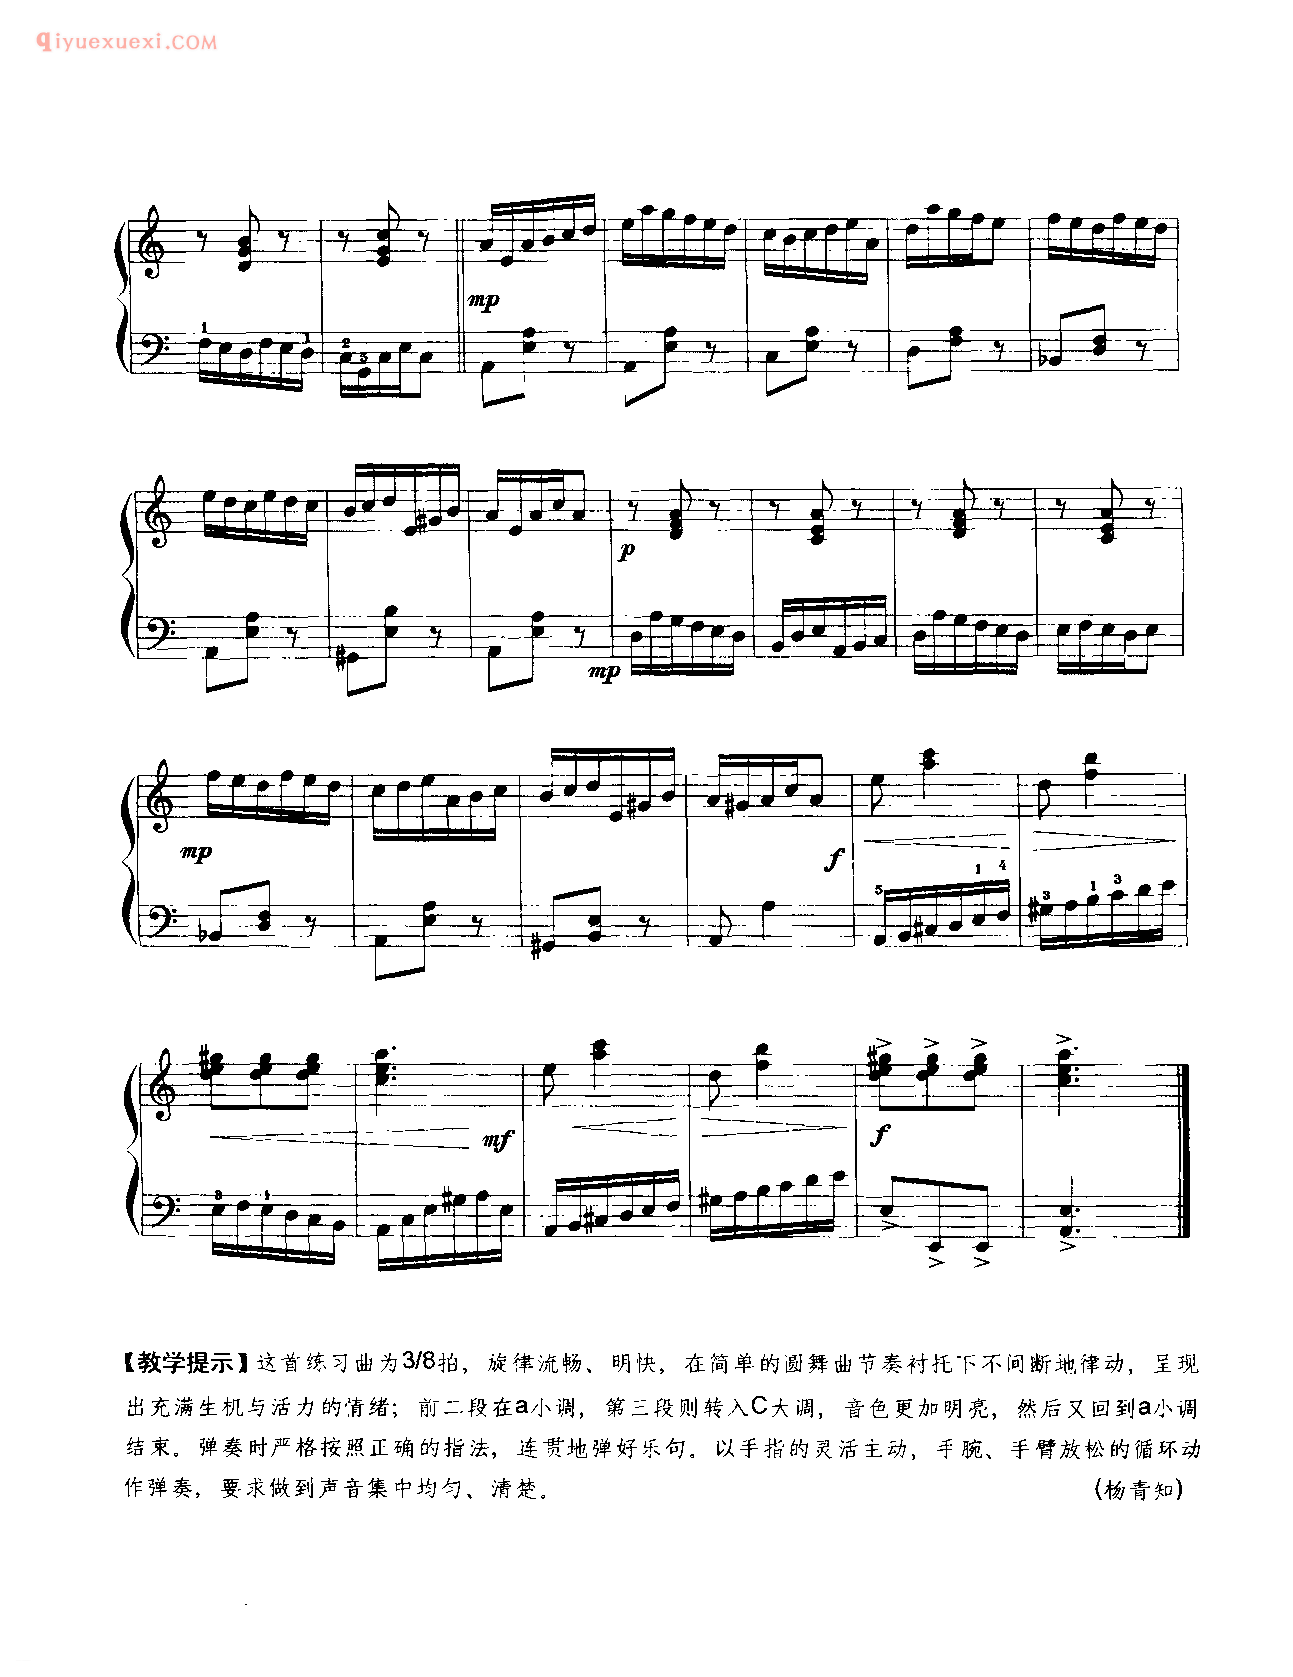 中国钢琴乐曲谱_练习曲_杨青知曲